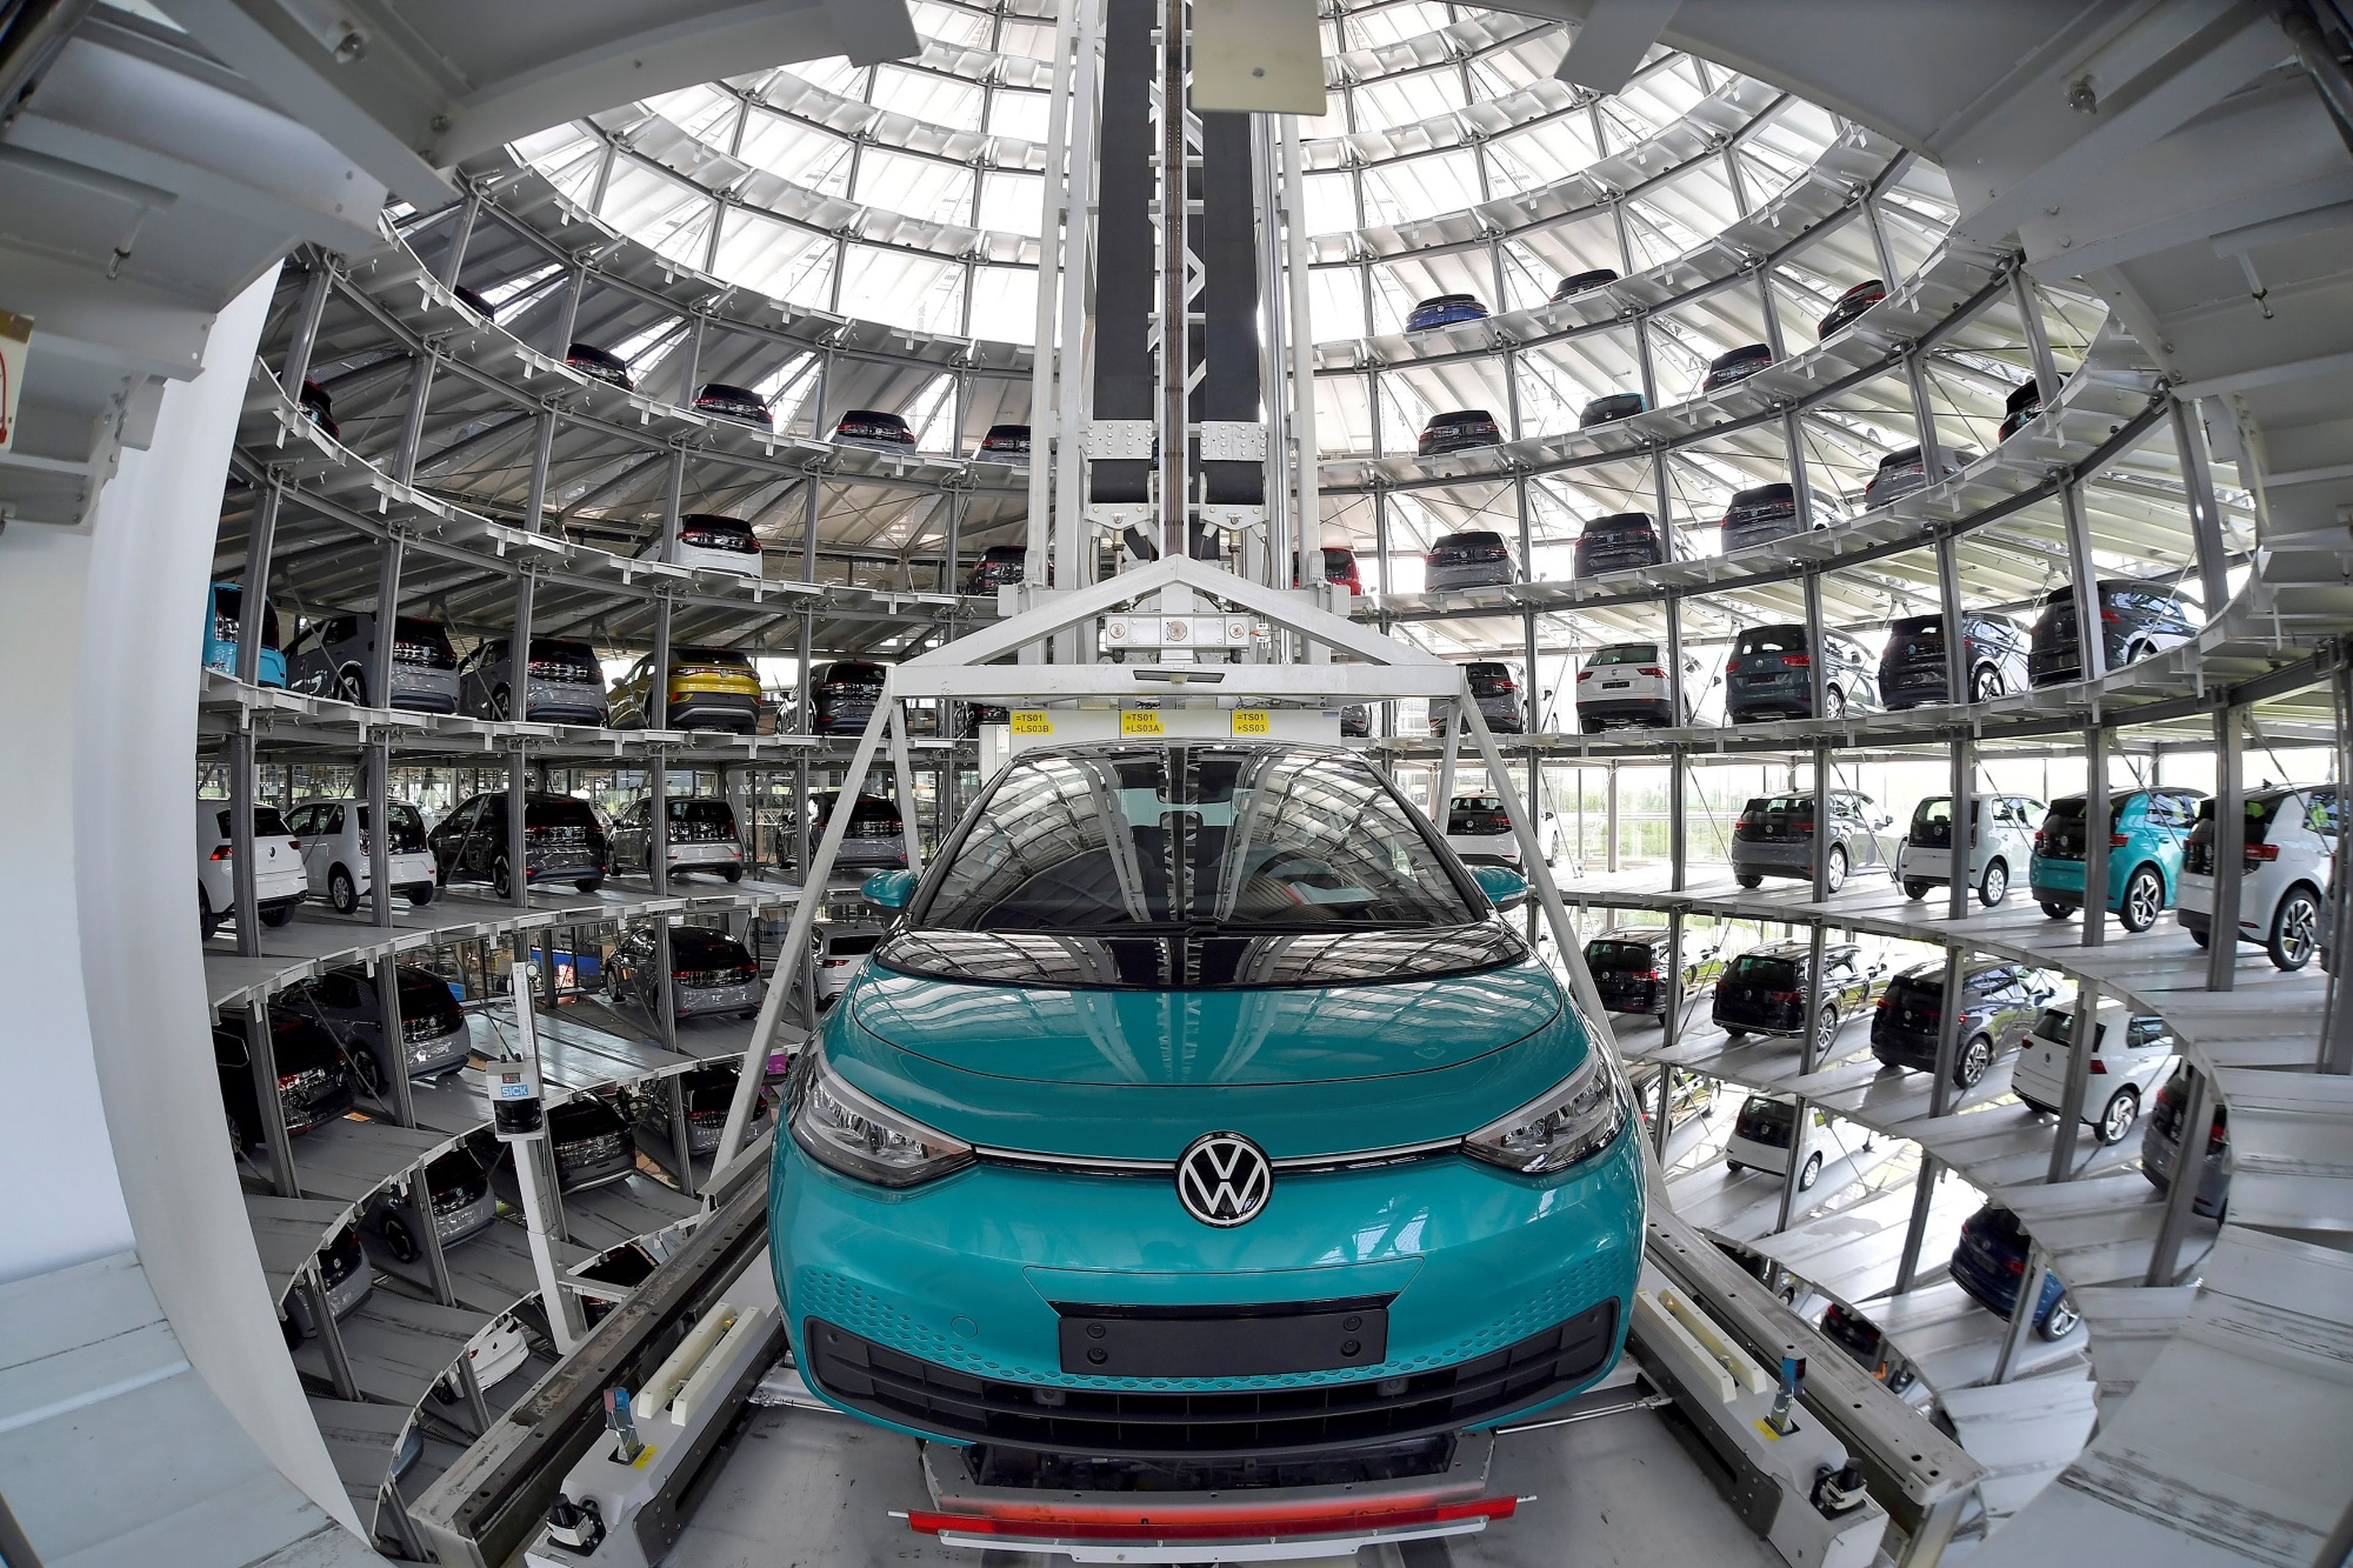 Fábrica del Volkswagen ID3, uno de los modelos eléctricos de la marca, en Dresde (Alemania)